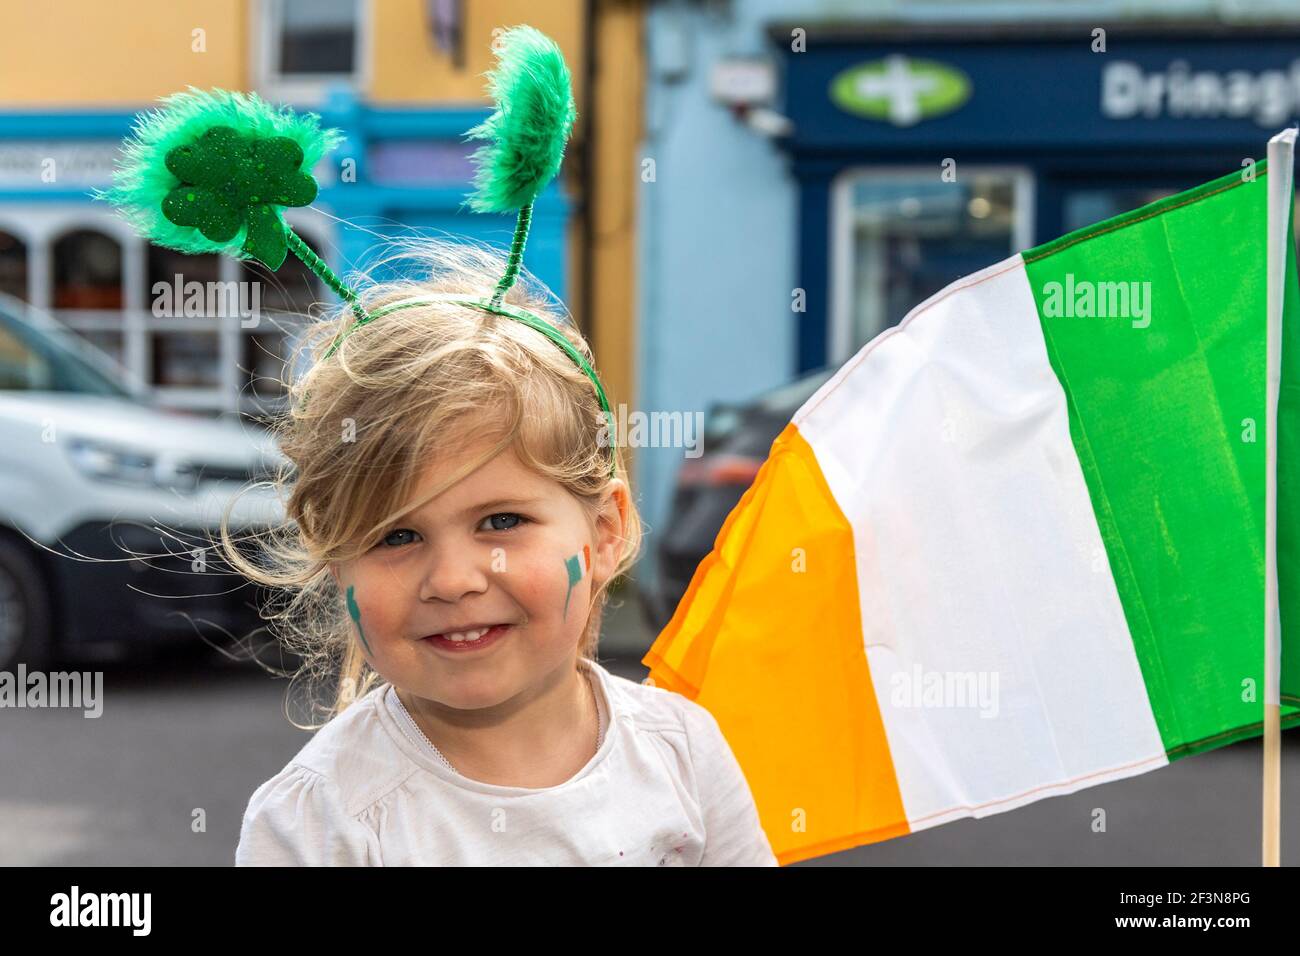 Schull, West Cork, Irland. März 2021, 17th. Obwohl alle Paraden zum St. Patrick's Day in Irland wegen COVID-19 abgesagt wurden, hielt das die Leute nicht davon ab, sich für den Irish National Day in Grün zu kleiden. In Schull feierte die 3-jährige Evie McCarthy. Quelle: AG News/Alamy Live News Stockfoto